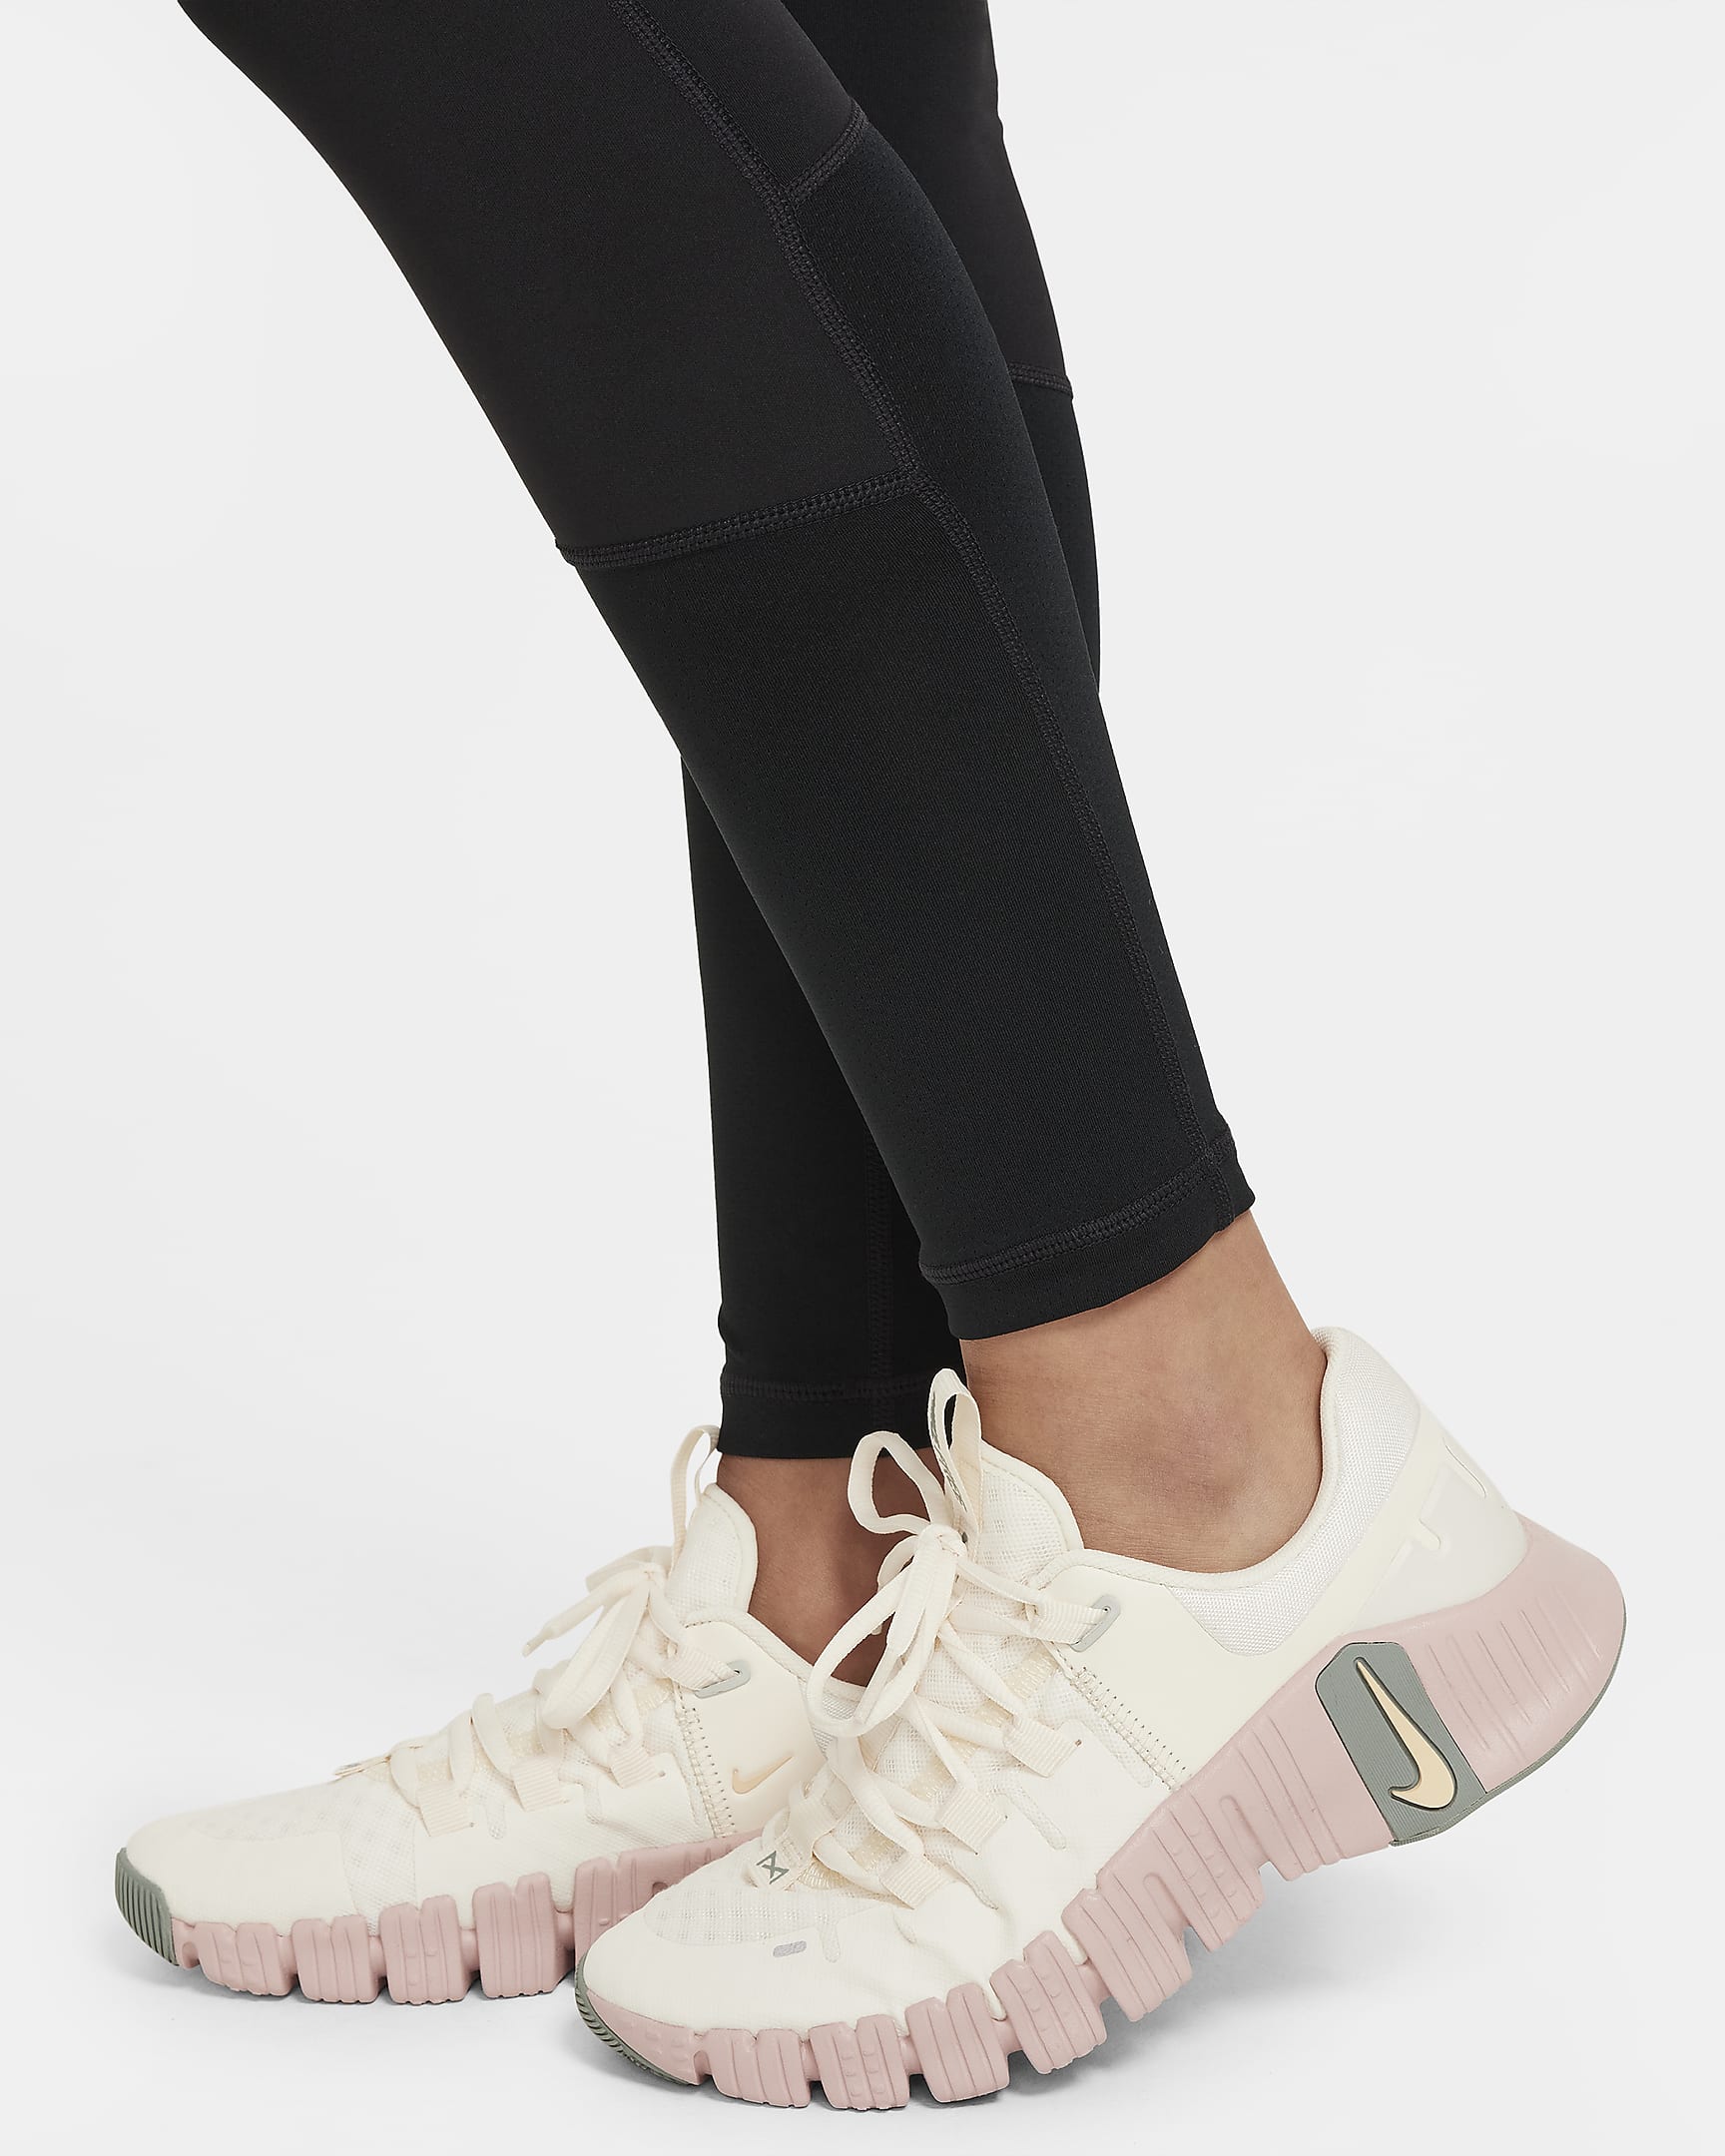 Nike Pro Dri-FIT Leggings für ältere Kinder (Mädchen) - Schwarz/Weiß